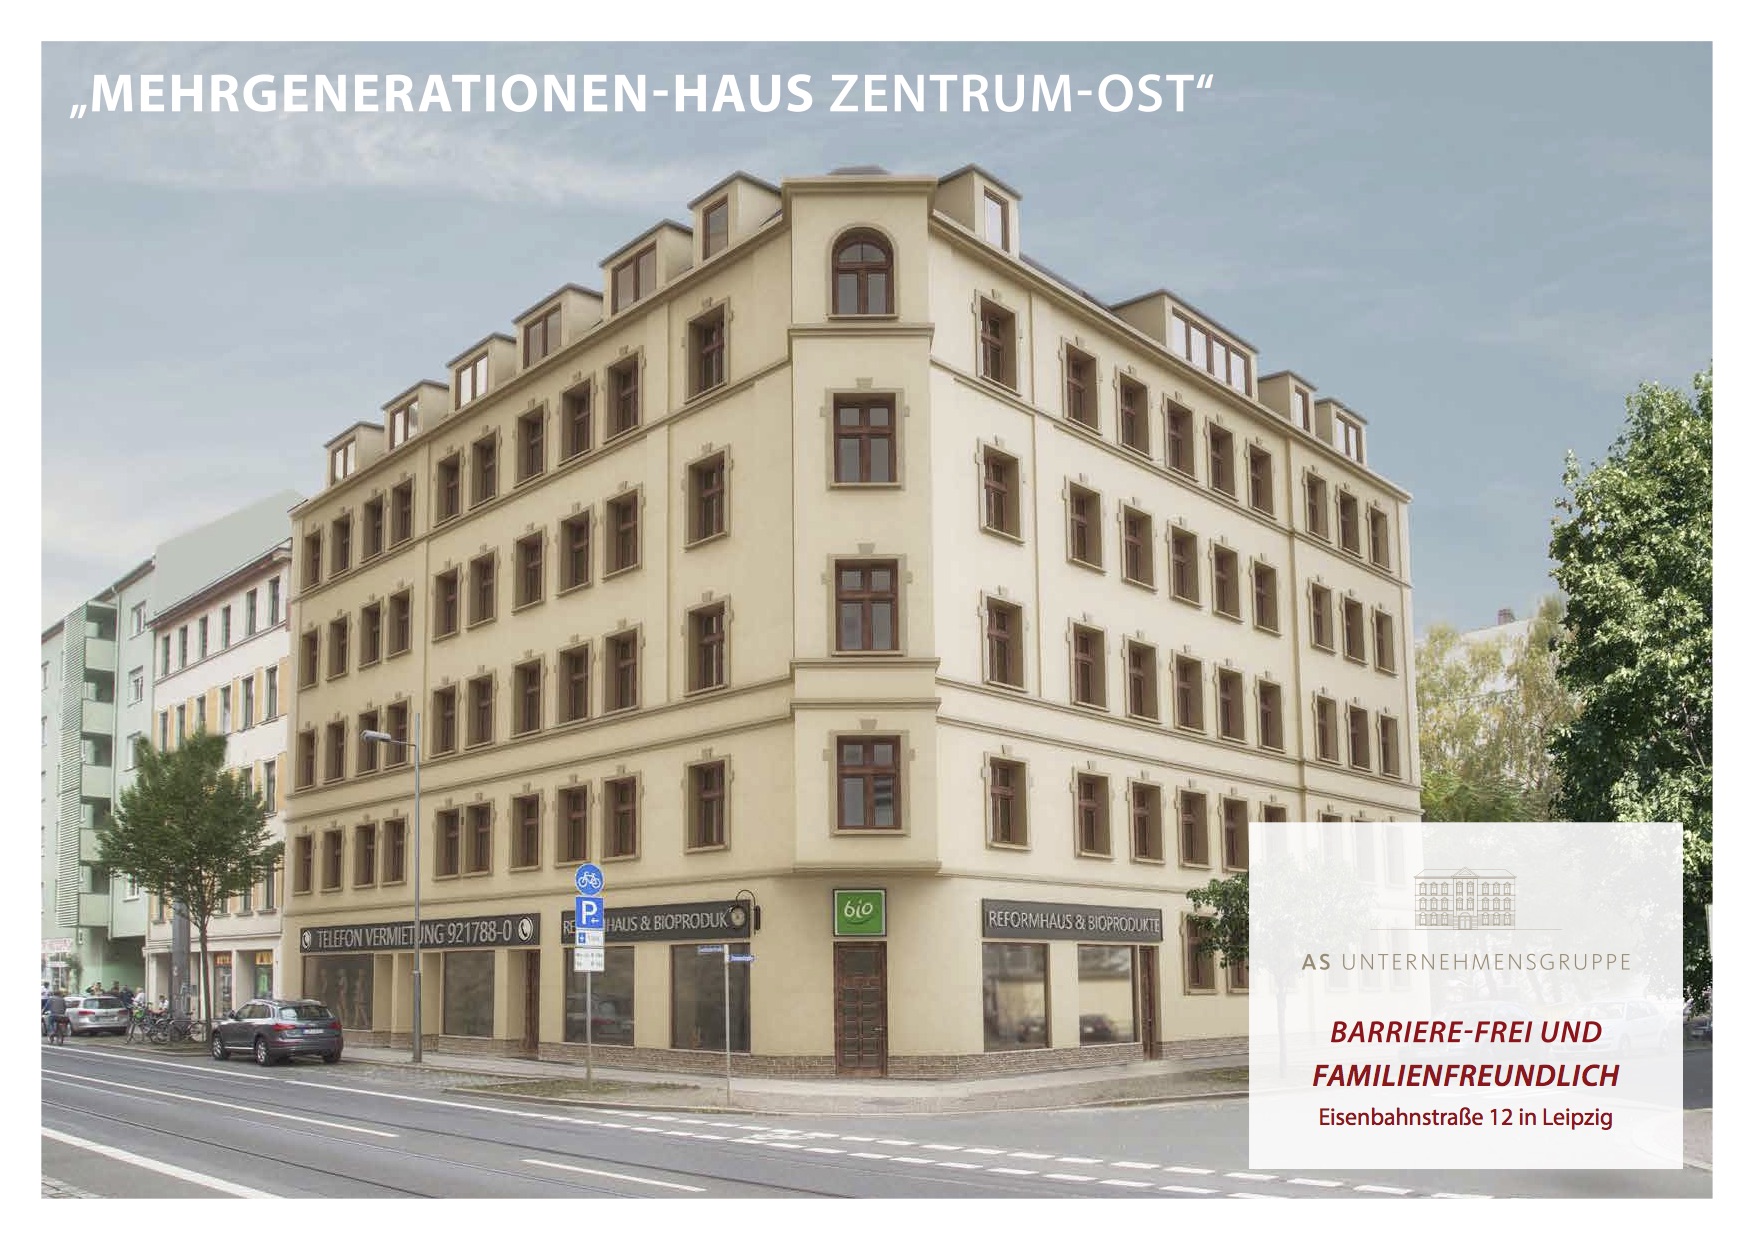 AS Unternehmensgruppe gibt Vertriebsstart eines weiteren Kulturdenkmals als Mehrgenerationenhaus im Zentrum von Leipzig bekannt